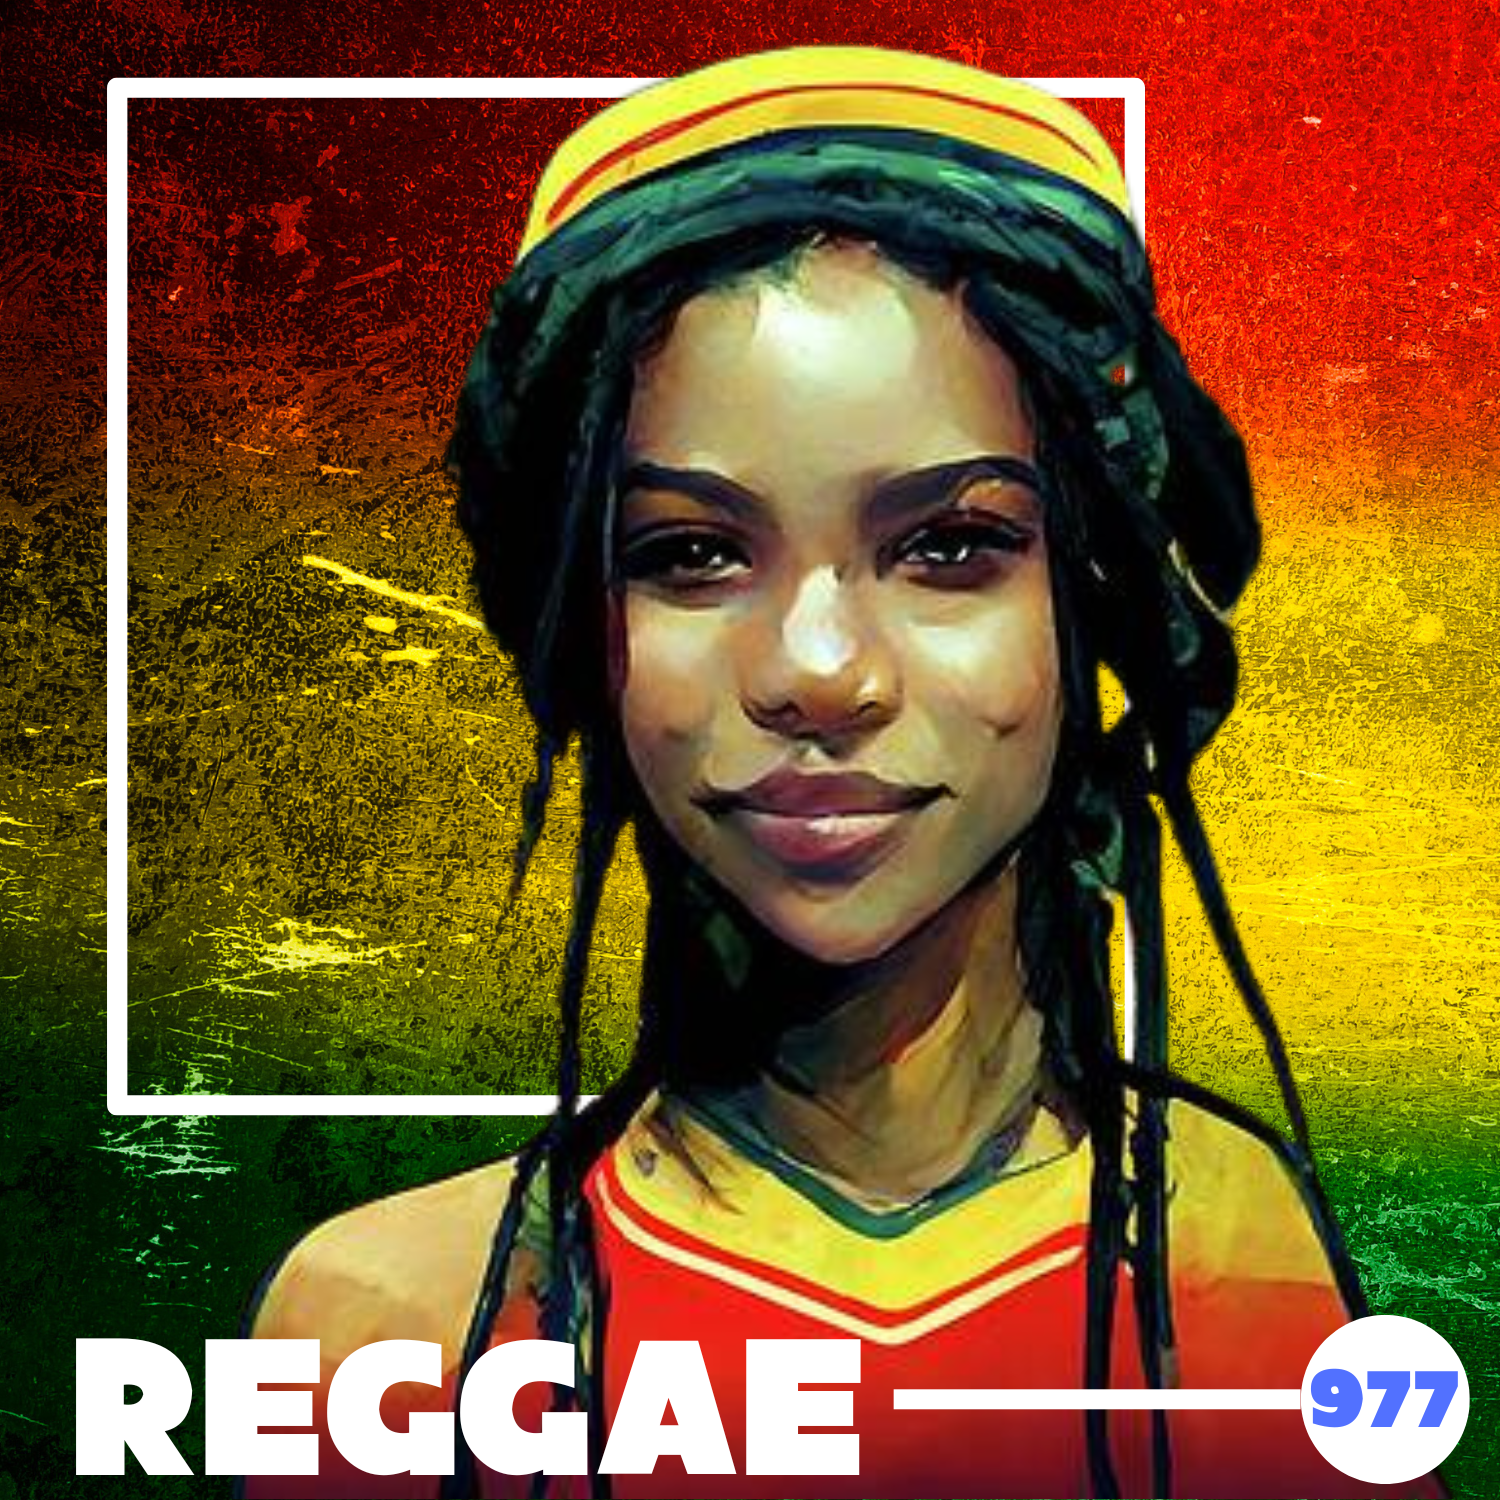 Reggae 977